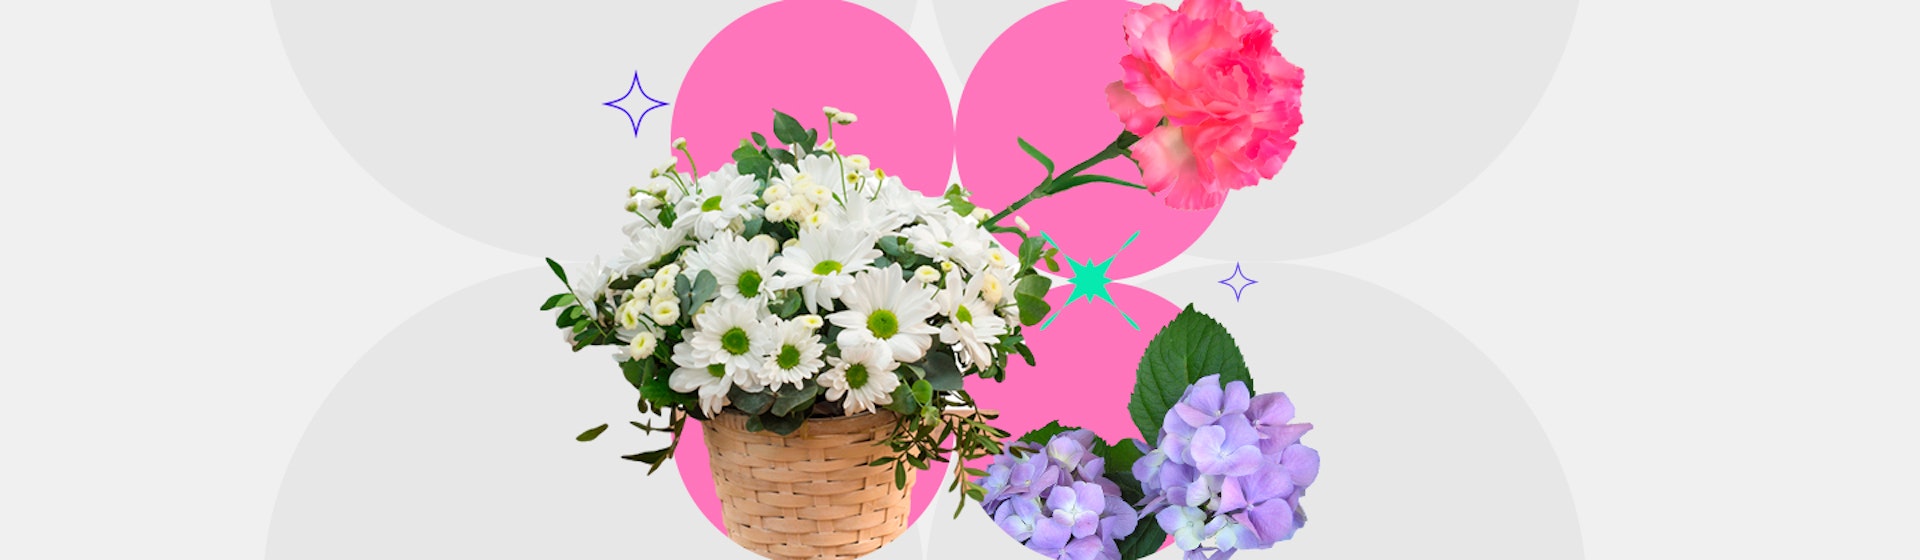 10 flores de jardín para decorar y darle color a tus áreas verdes